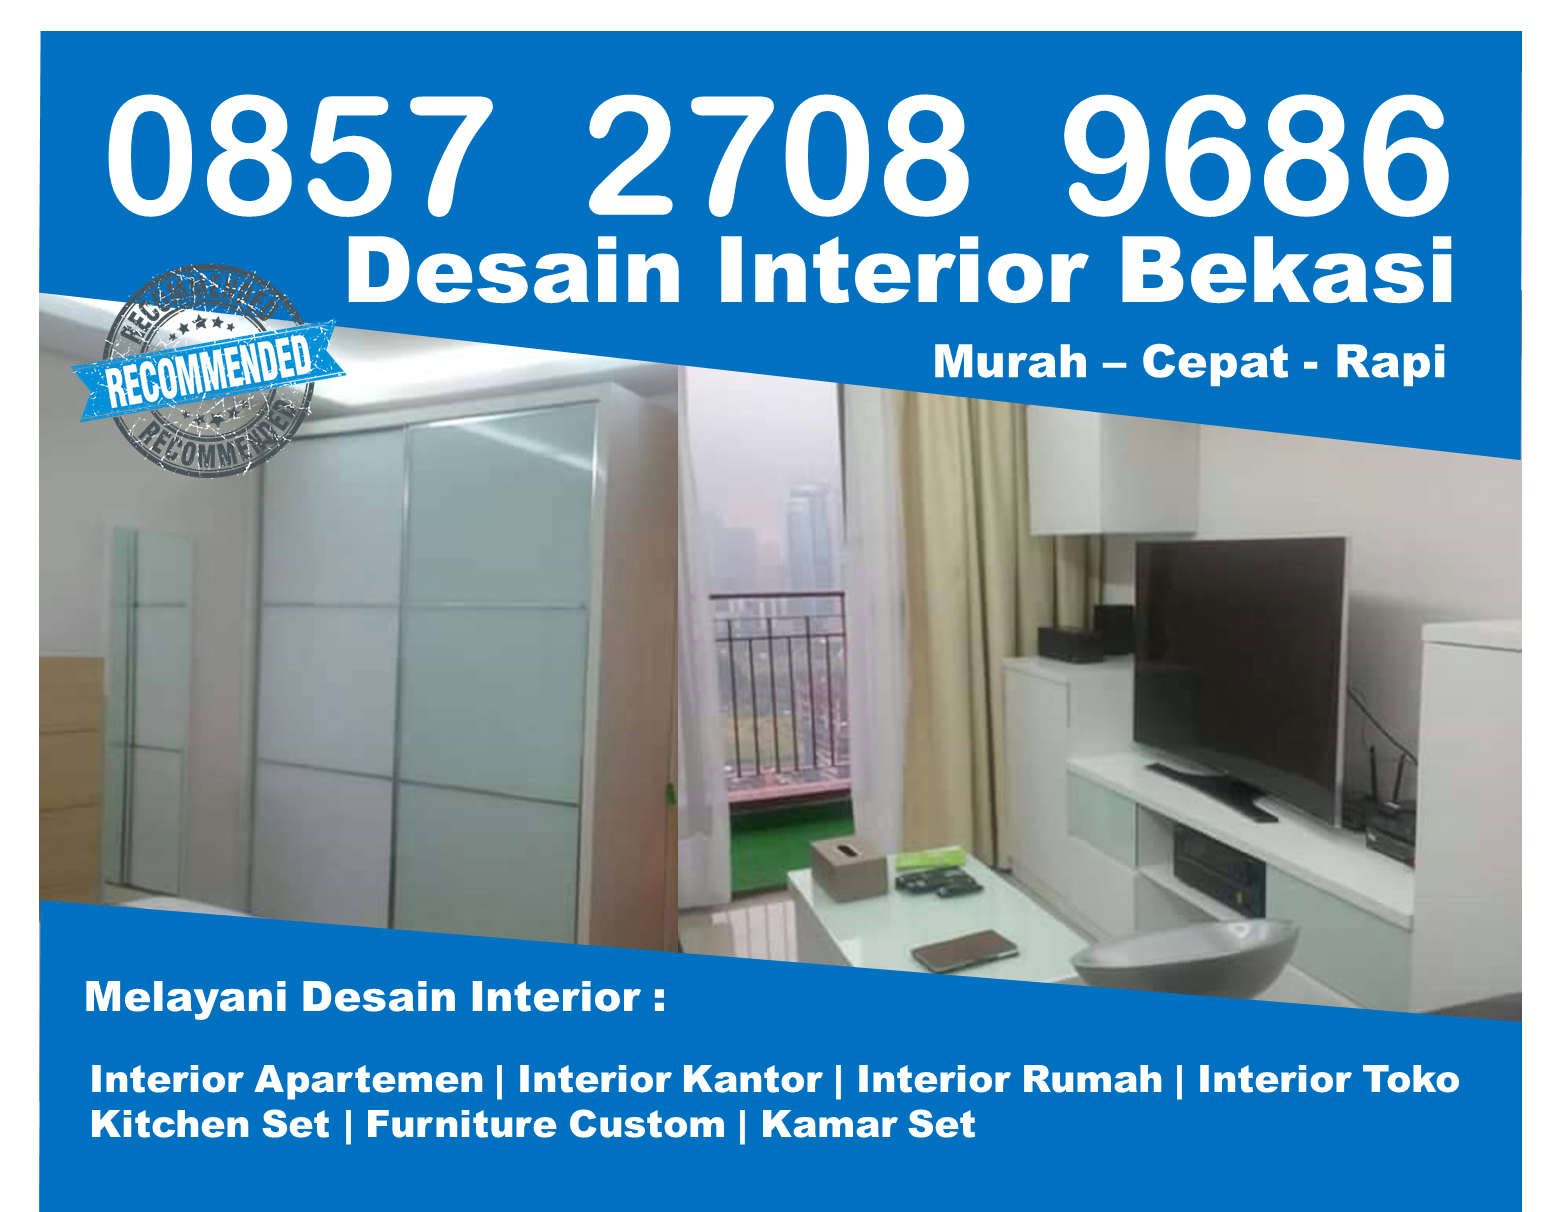 Telp 0857 2708 9686 Indosat Biaya Desain Interior Rumah